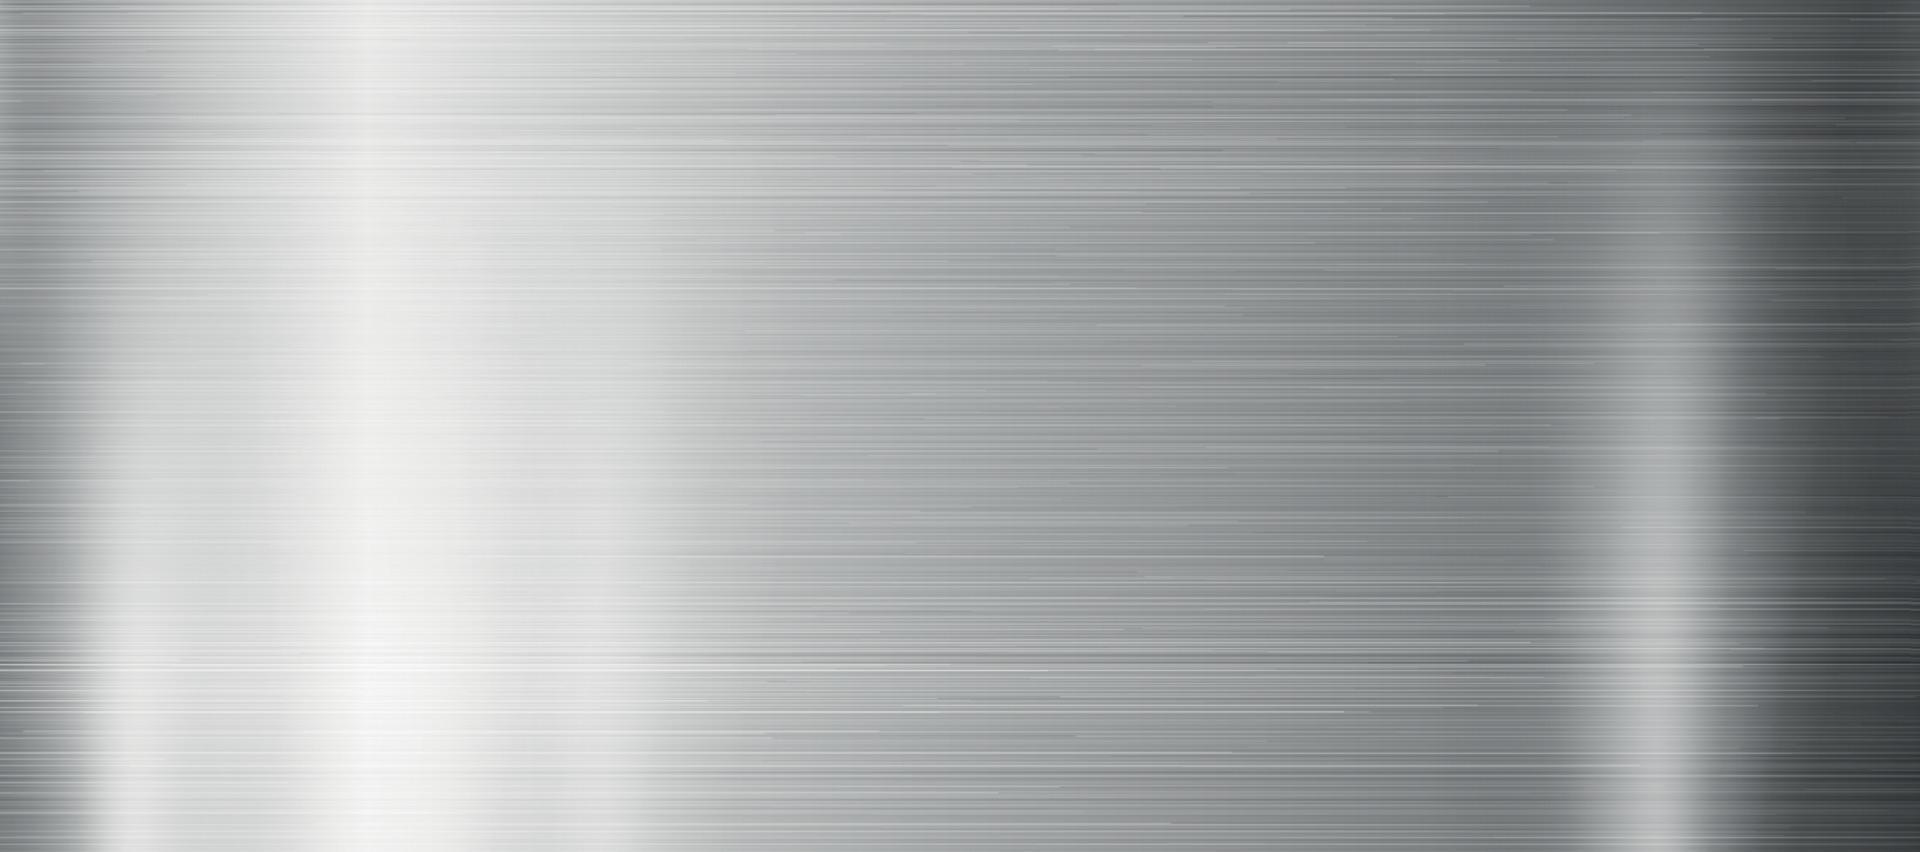 zilver textuur, aluminium web achtergrond sjabloon - vector